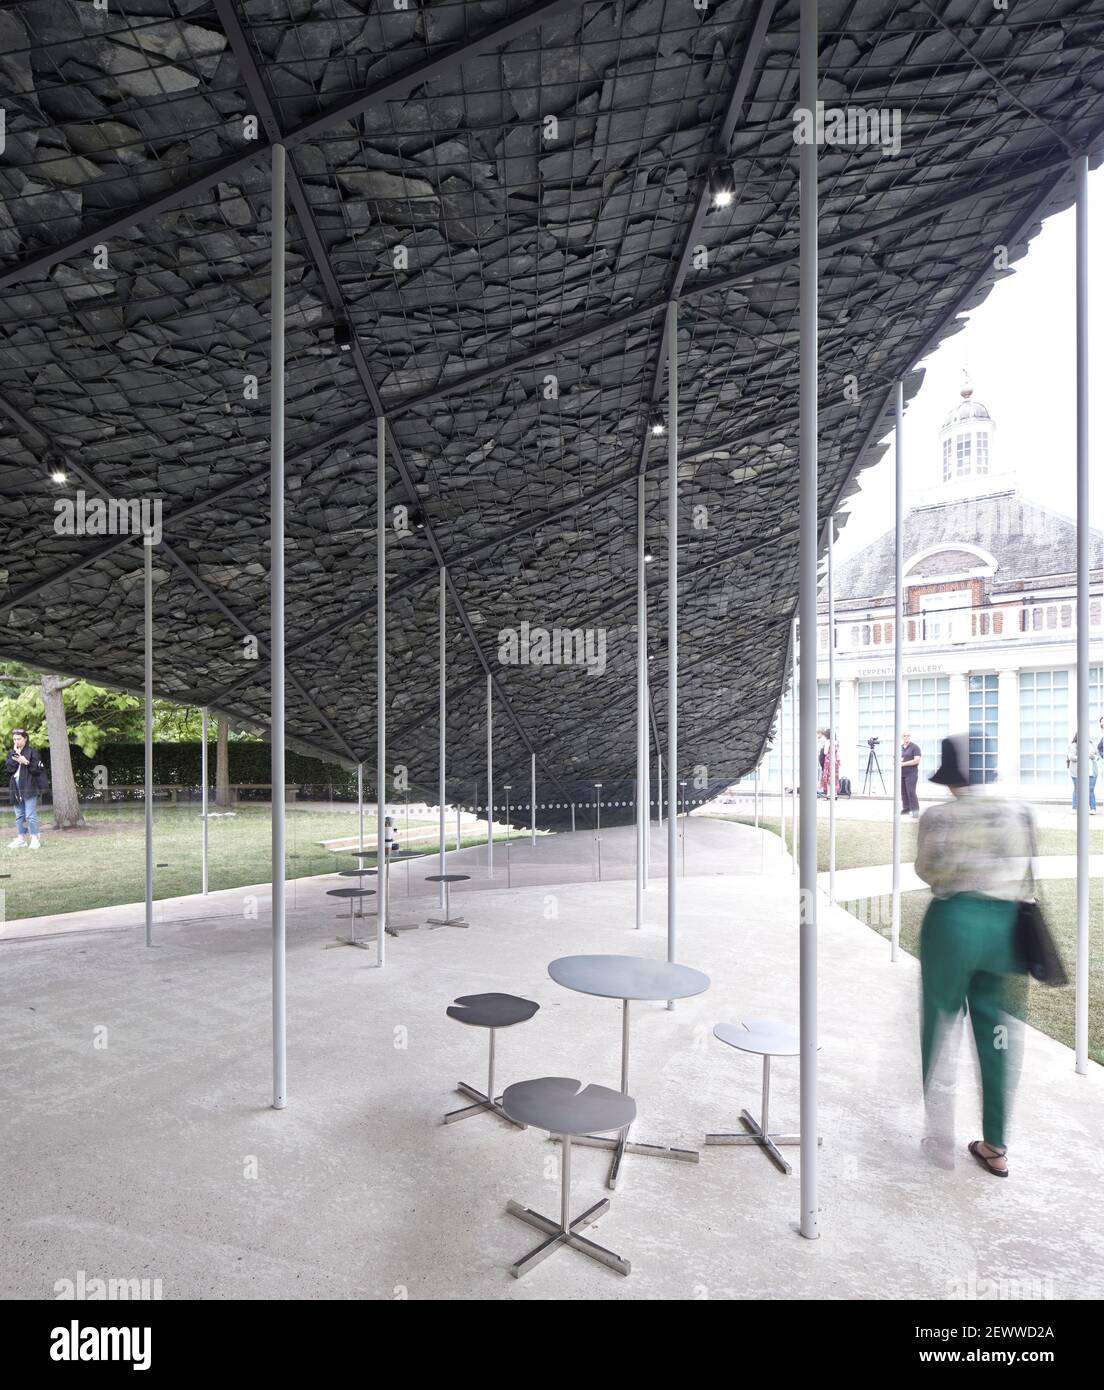 Affichage de l'heure du jour avec chiffre de passage. Serpentine Pavilion 2019, LONDRES, Royaume-Uni. Architecte: Junya Ishigami , 2021. Banque D'Images